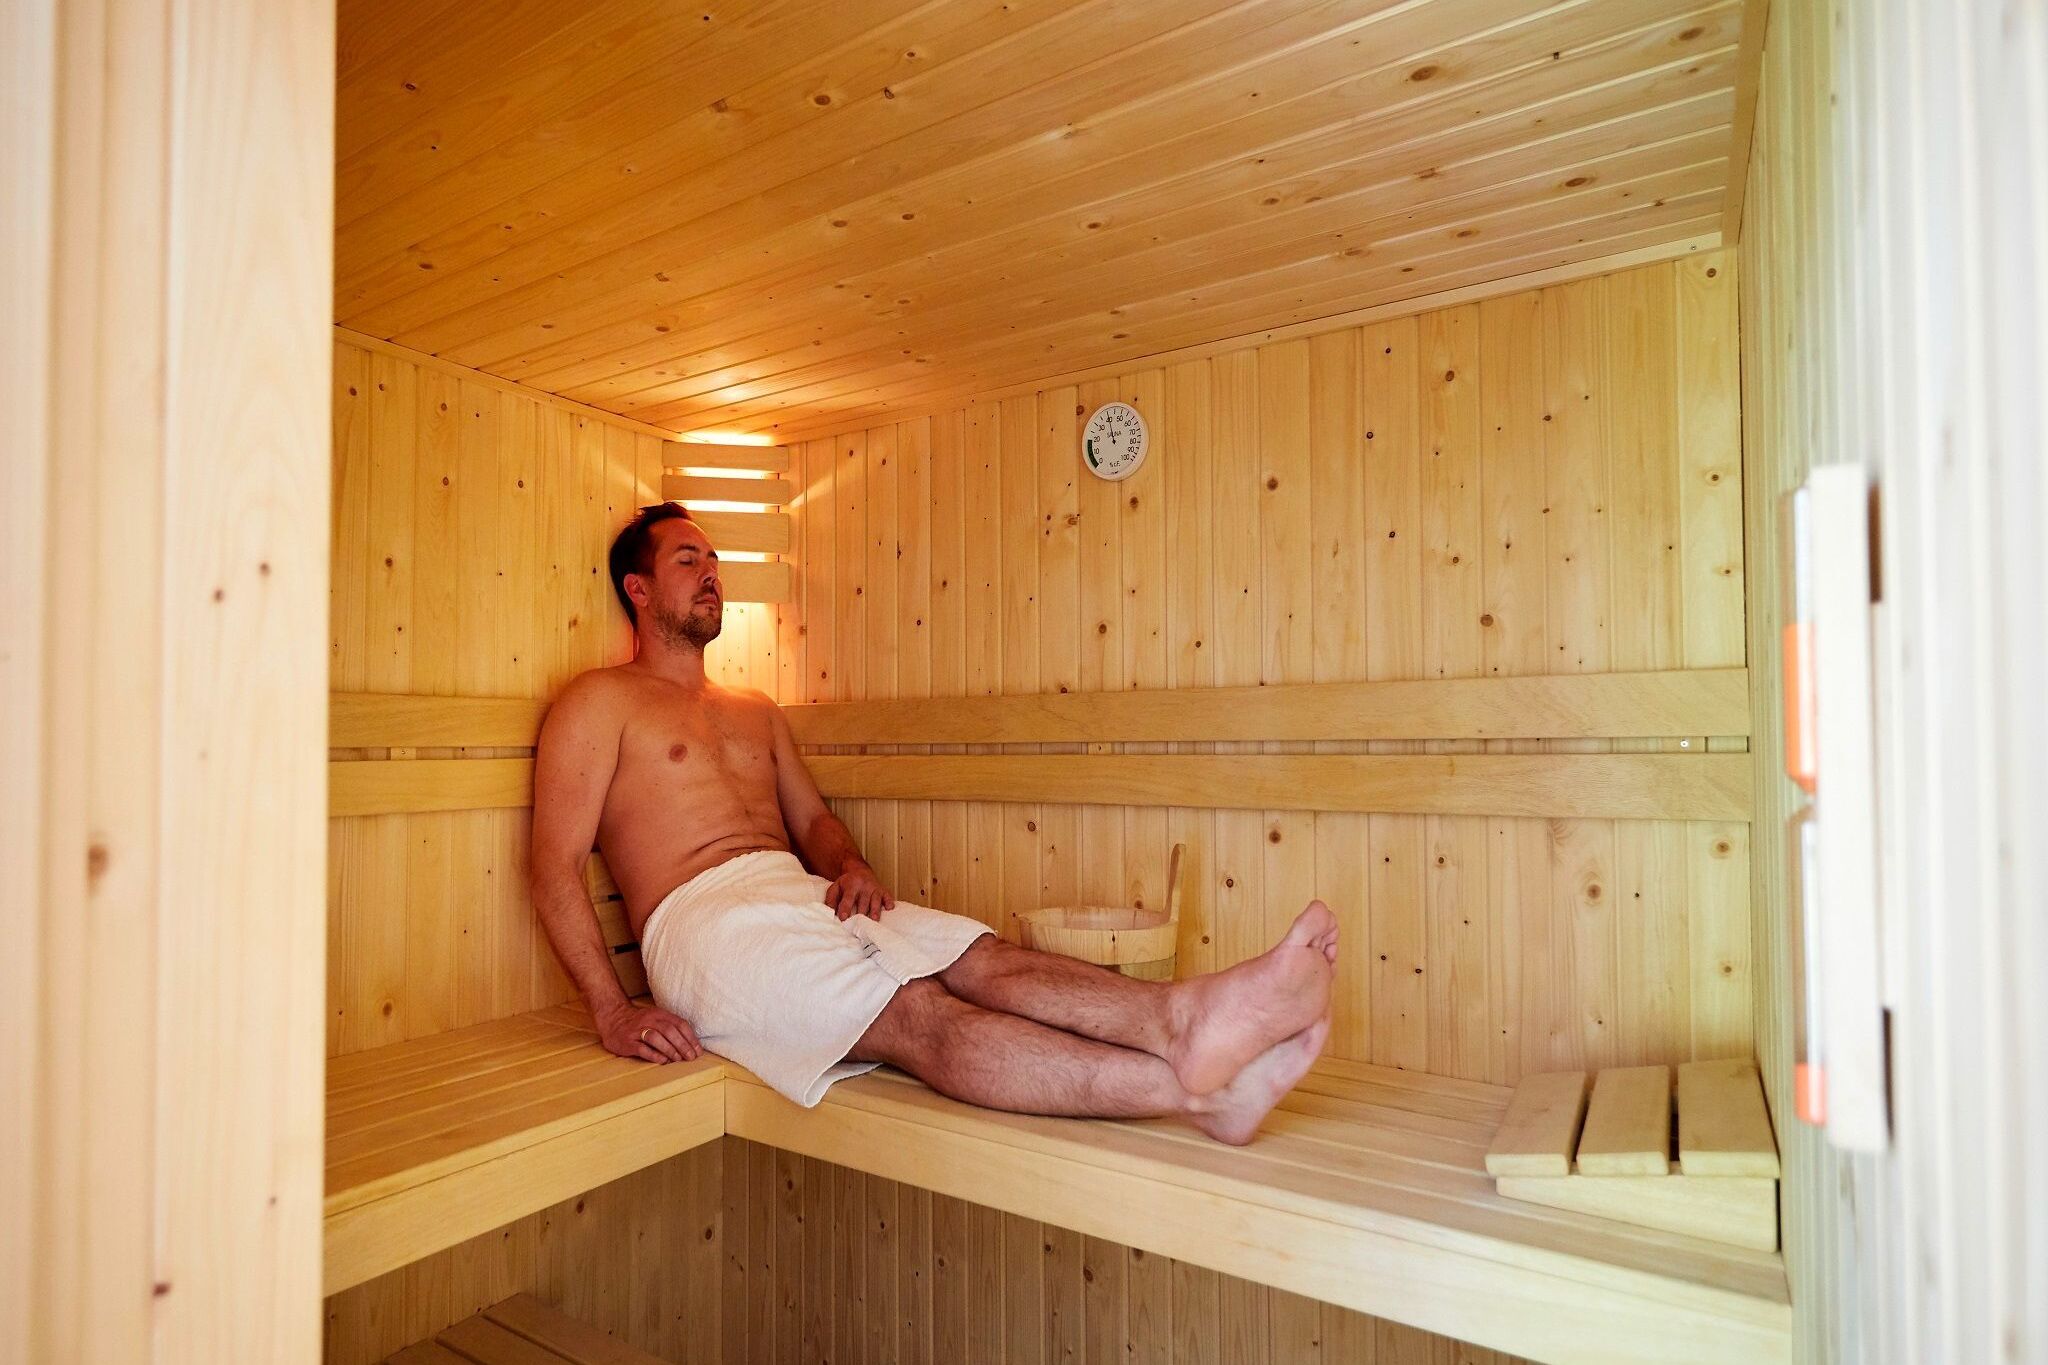 Luxuriöse Villa mit Sauna und Whirlpool in Limburg